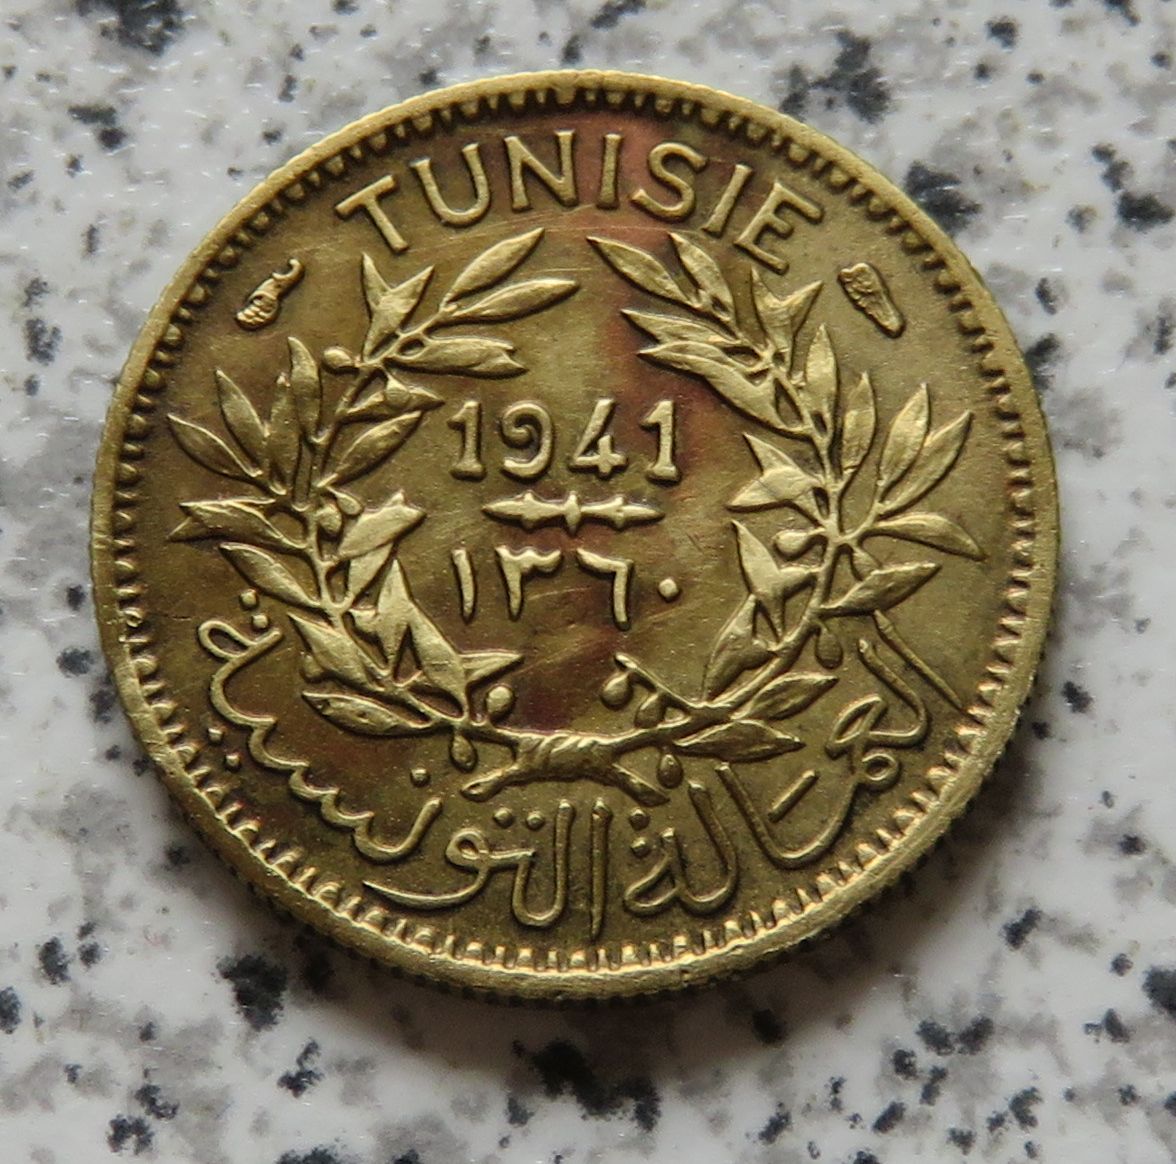  Tunesien 50 Centimes 1941   